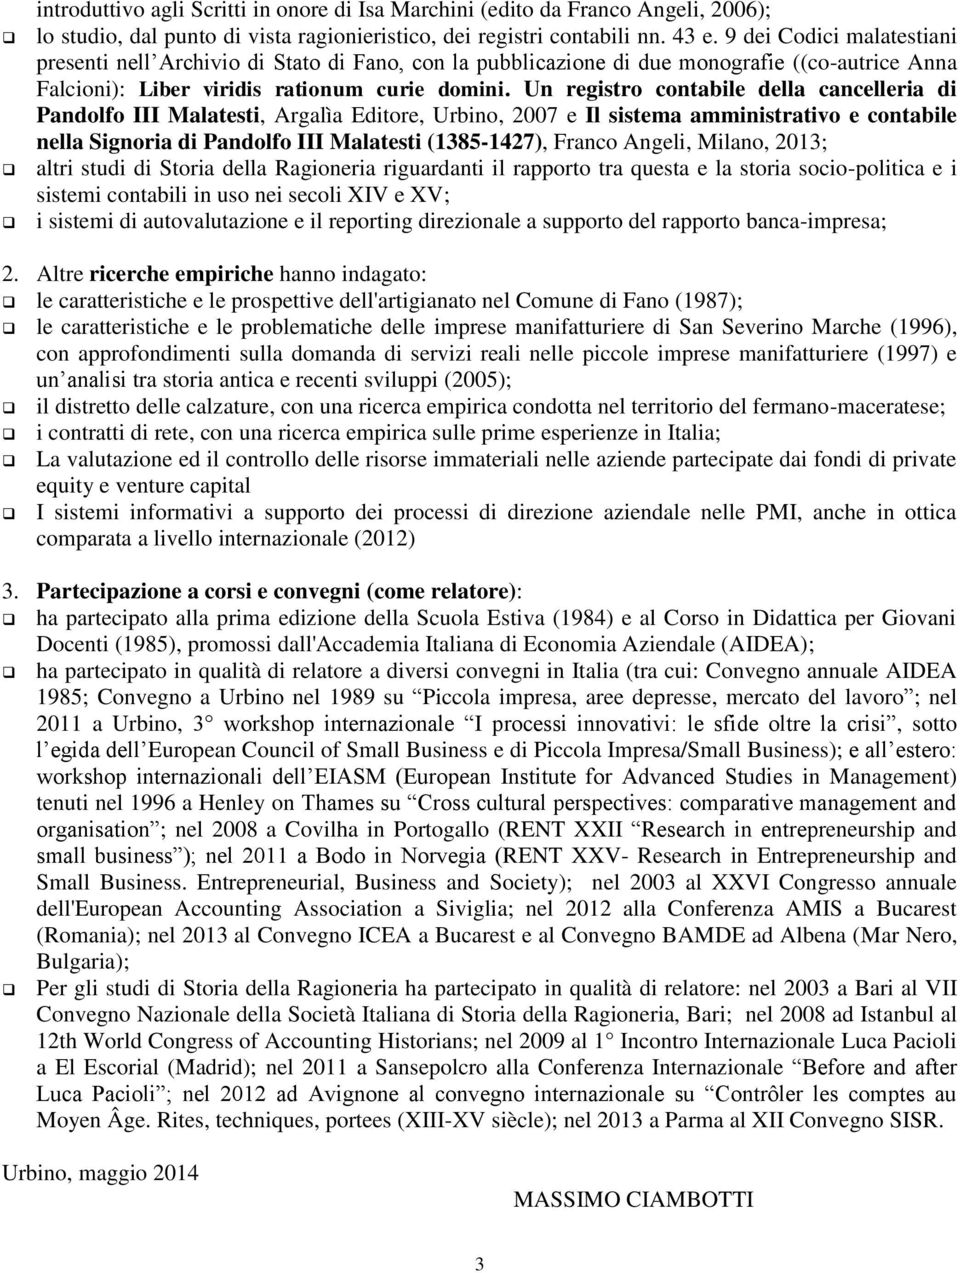 Un registro contabile della cancelleria di Pandolfo III Malatesti, Argalìa Editore, Urbino, 2007 e Il sistema amministrativo e contabile nella Signoria di Pandolfo III Malatesti (1385-1427), Franco